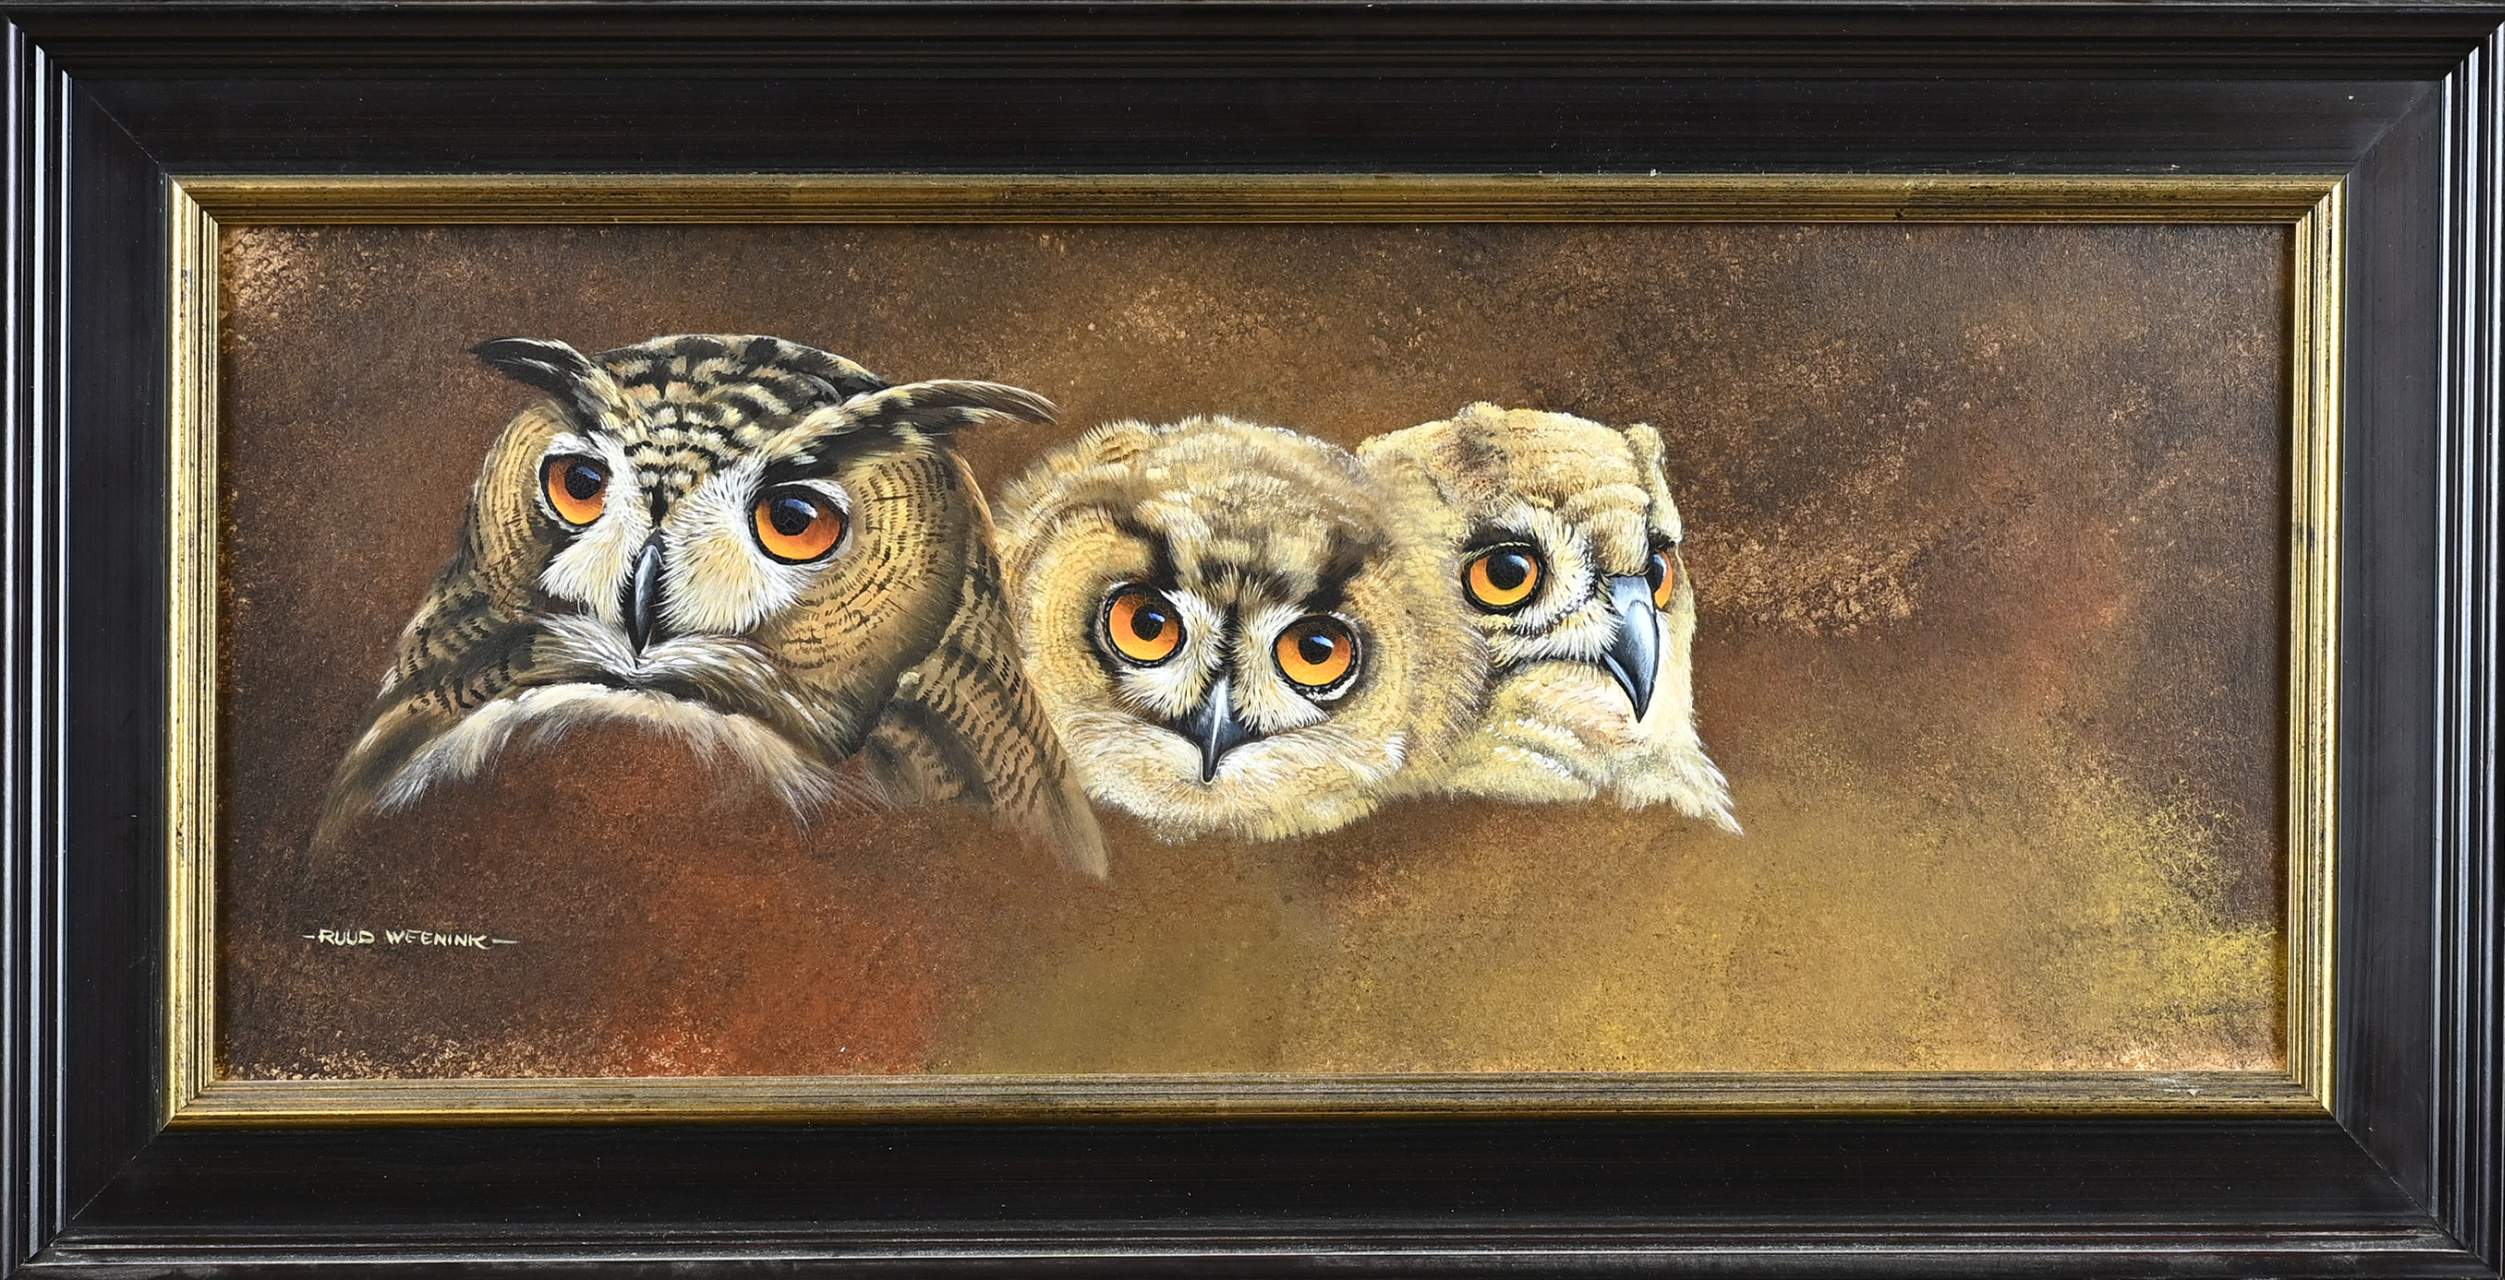 R. Weenink, Owls